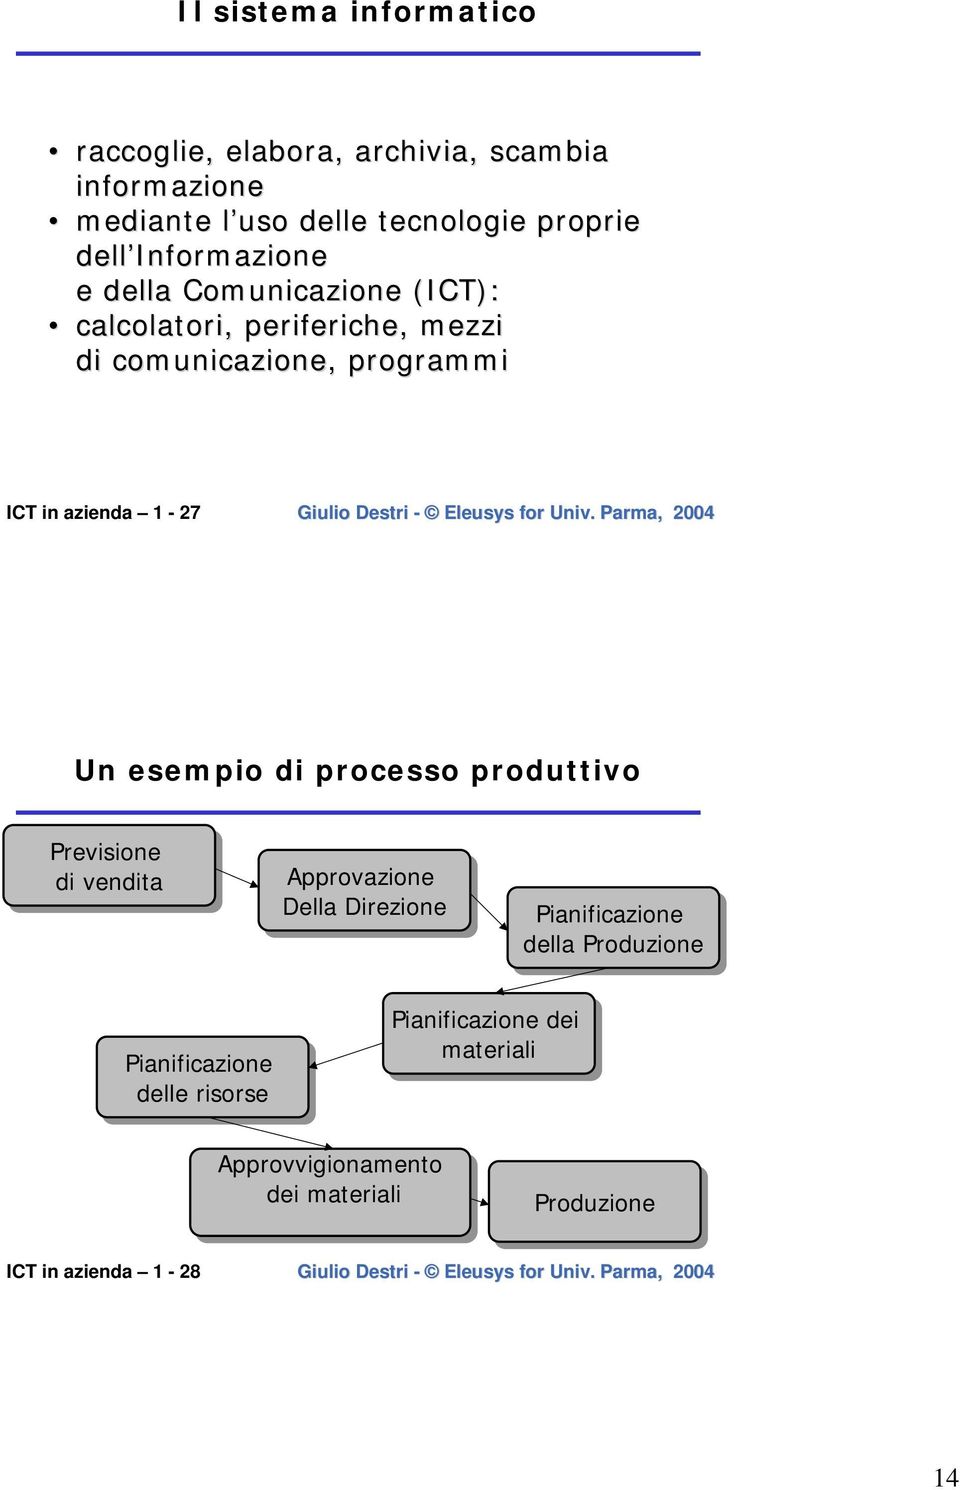 Un esempio di processo produttivo Previsione di di vendita Approvazione Della Direzione Pianificazione della Produzione